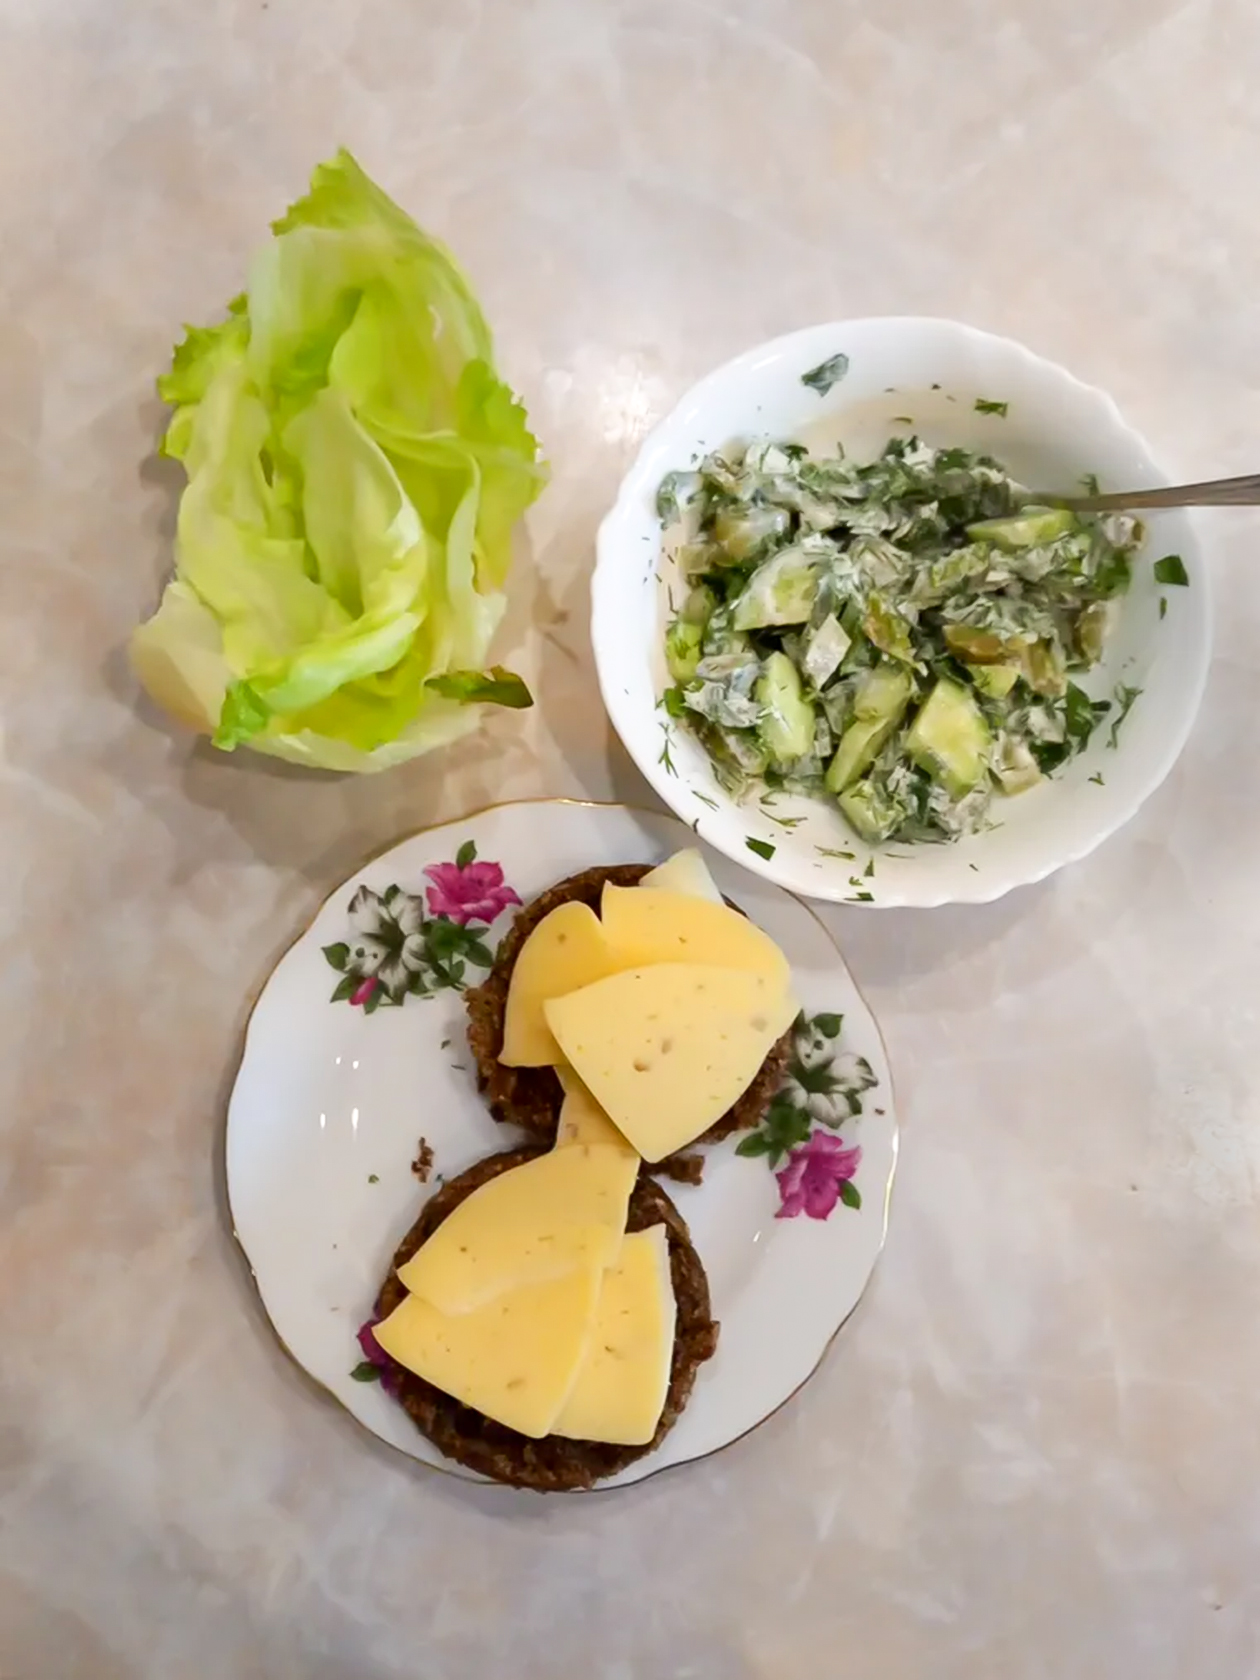 Так выглядел ужин на кетодиете: салат из огурцов и зелени с веганским майонезом, кетохлеб льняной со сливочным маслом и сыром, листья айсберга